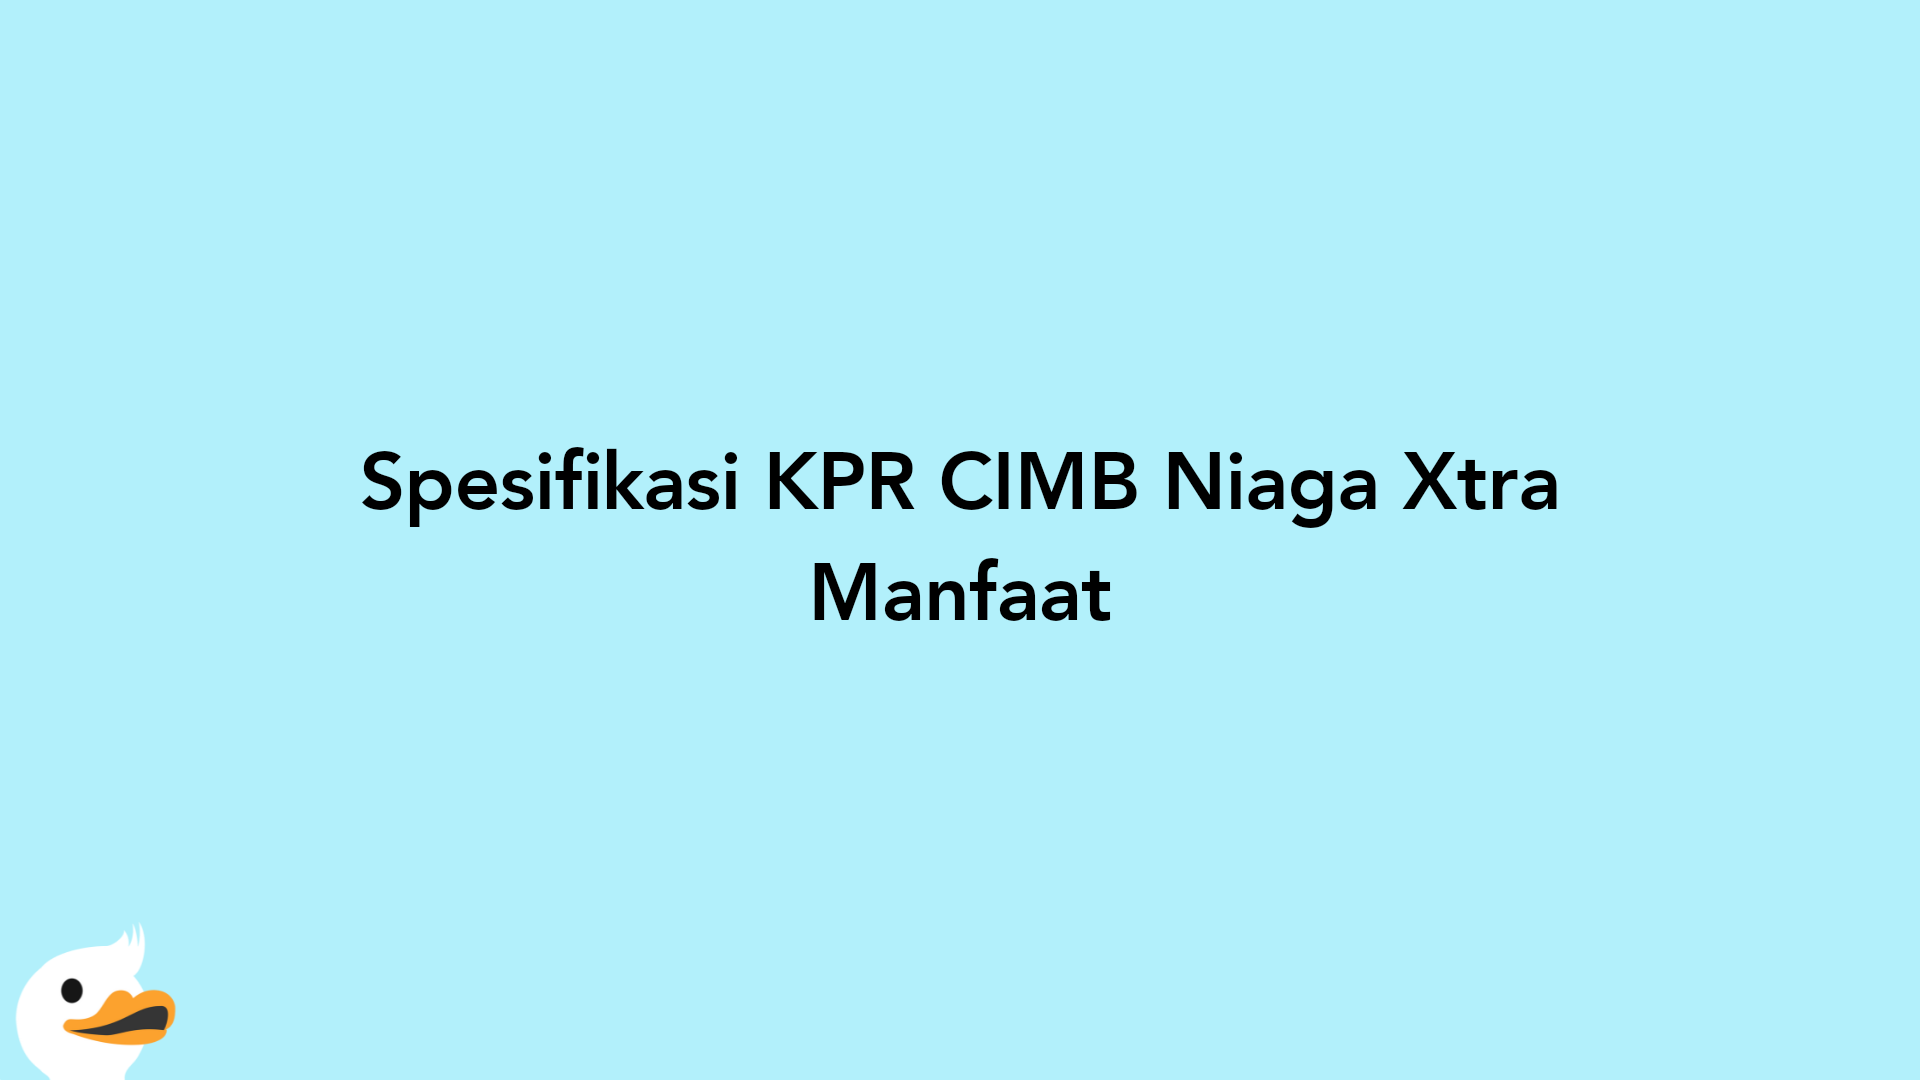 Spesifikasi KPR CIMB Niaga Xtra Manfaat